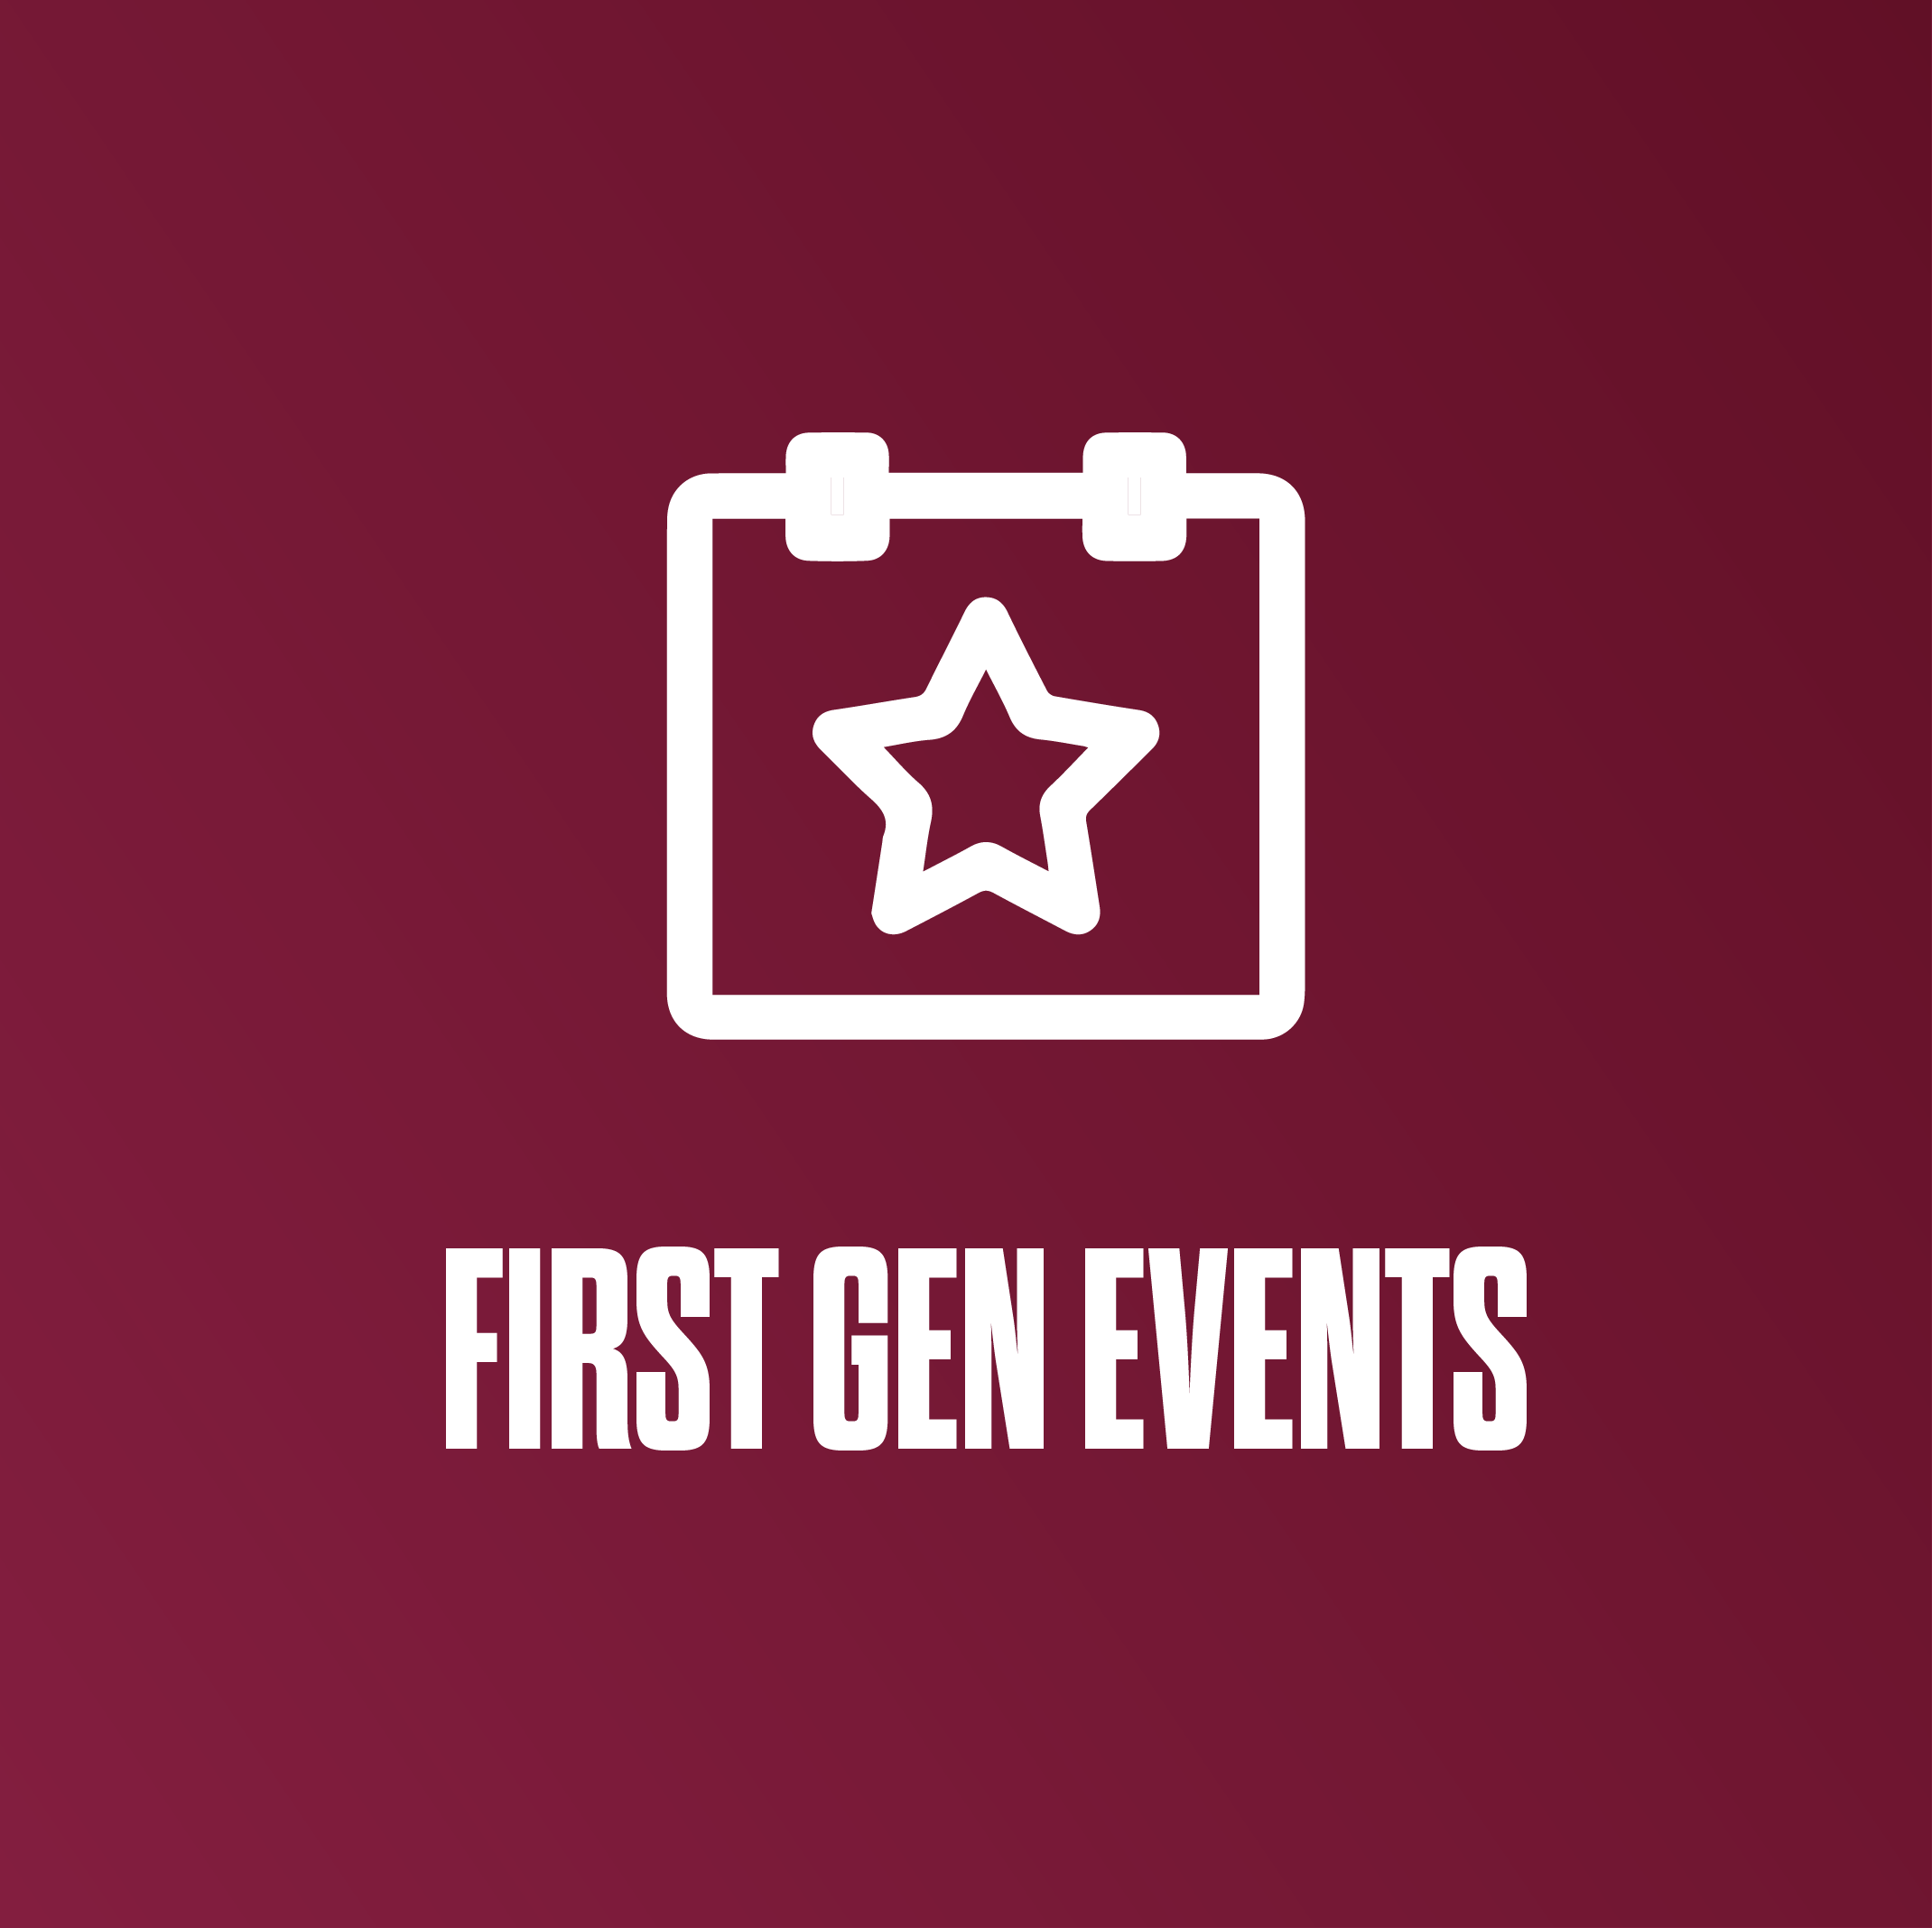 First Gen events at Eastern Kentucky University.